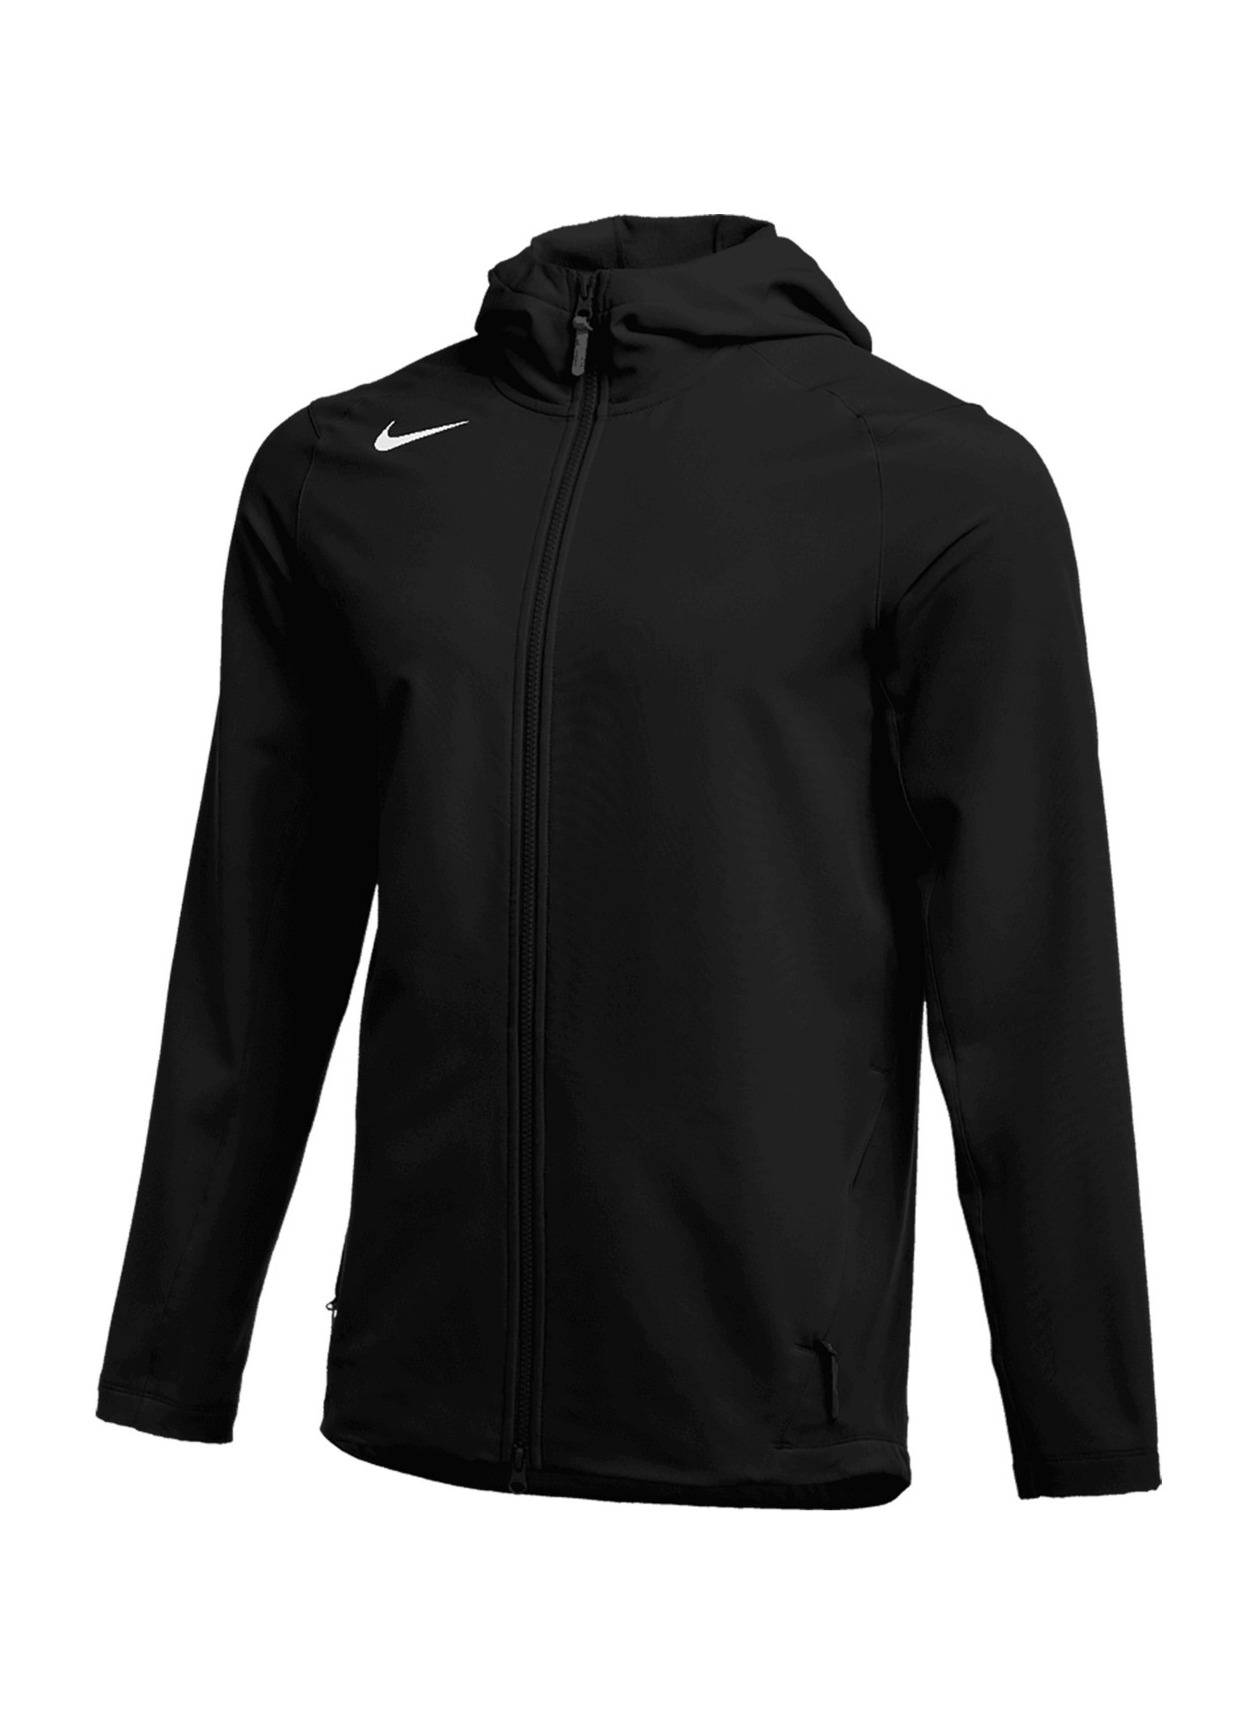 Nike Men's Team Black / White Full Zip Heavy Jacket